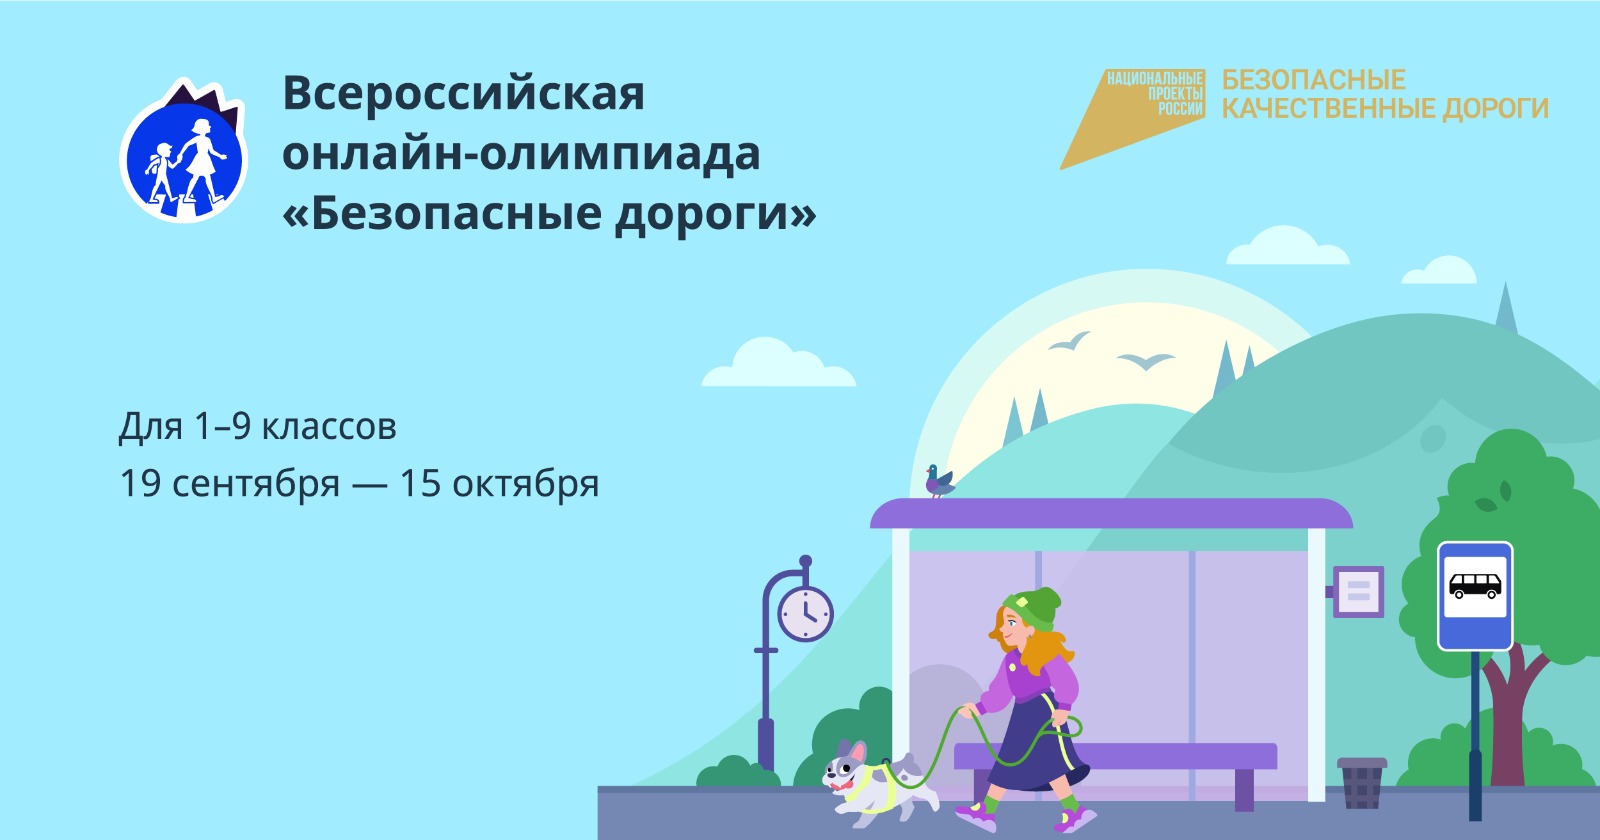 Приглашаем учеников 1–9 классов, их родителей и учителей на ежегодную всероссийскую олимпиаду «Безопасные дороги»: http://dorogi.uchi.ru?utm_source=smm&utm_medium=post&utm_campaign=ano_olimp_bkd23_ano_partner